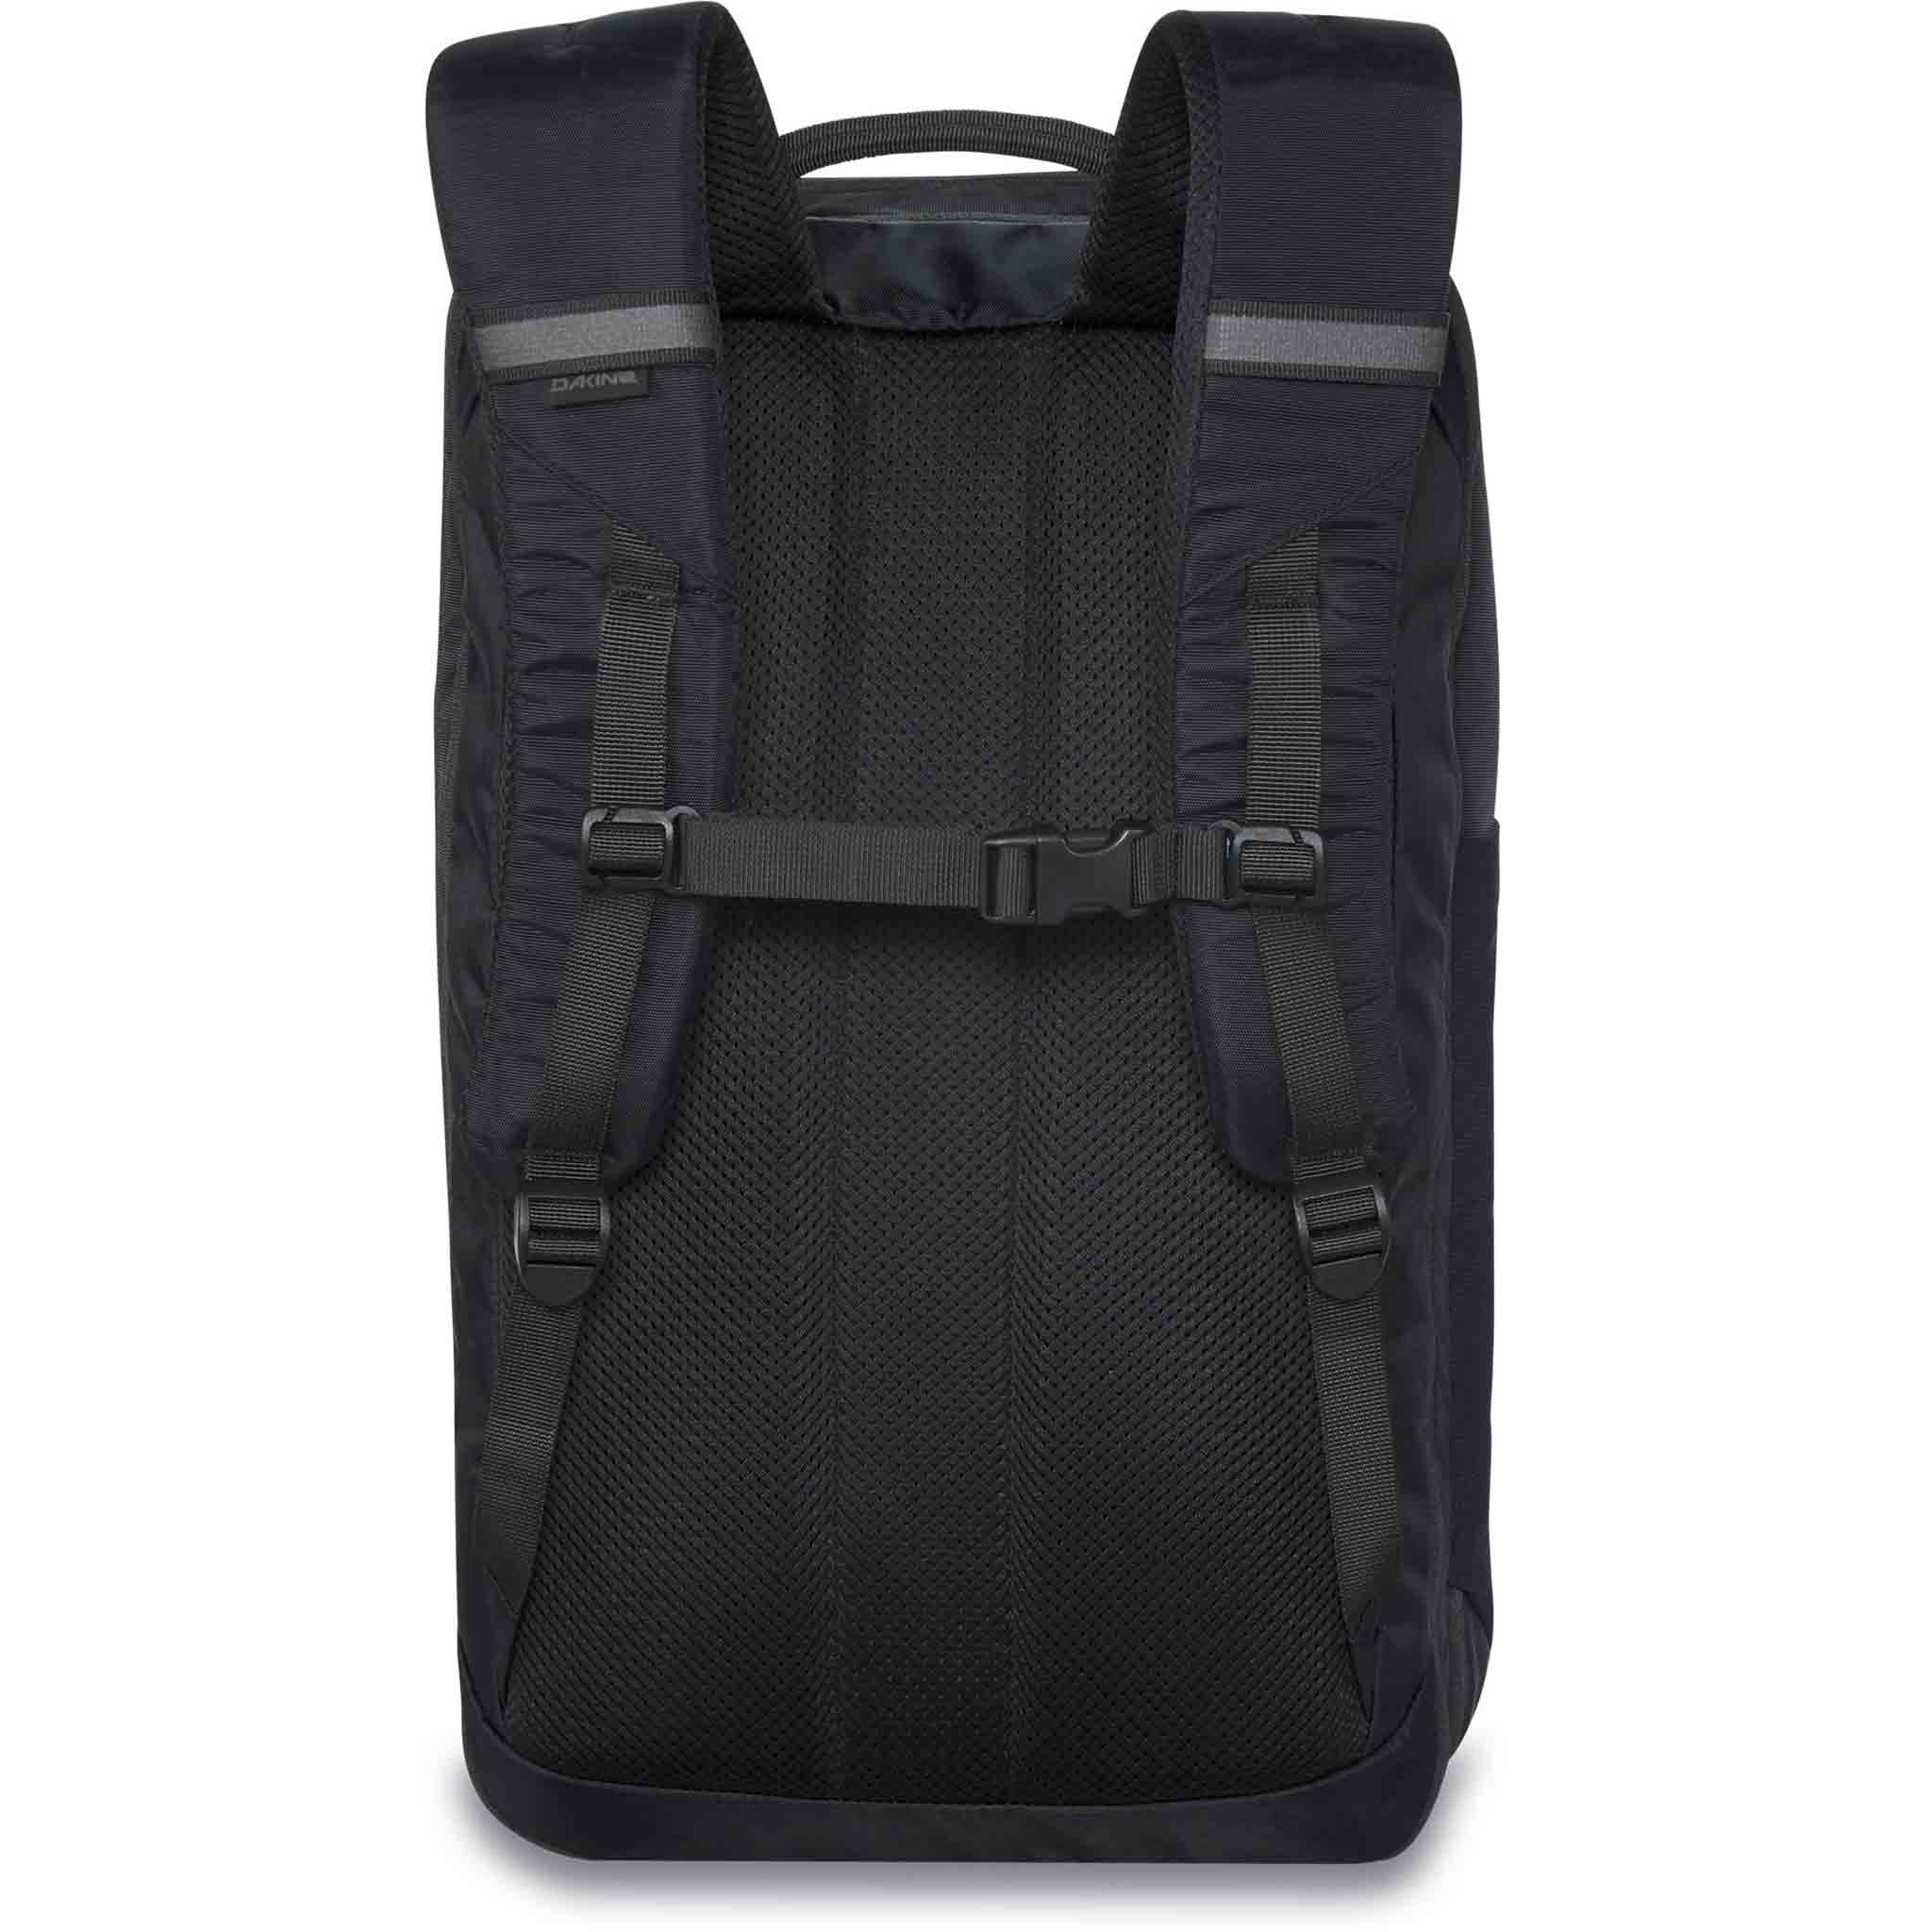 Dakine Mission Street Backpack DLX 32L Black Backpack